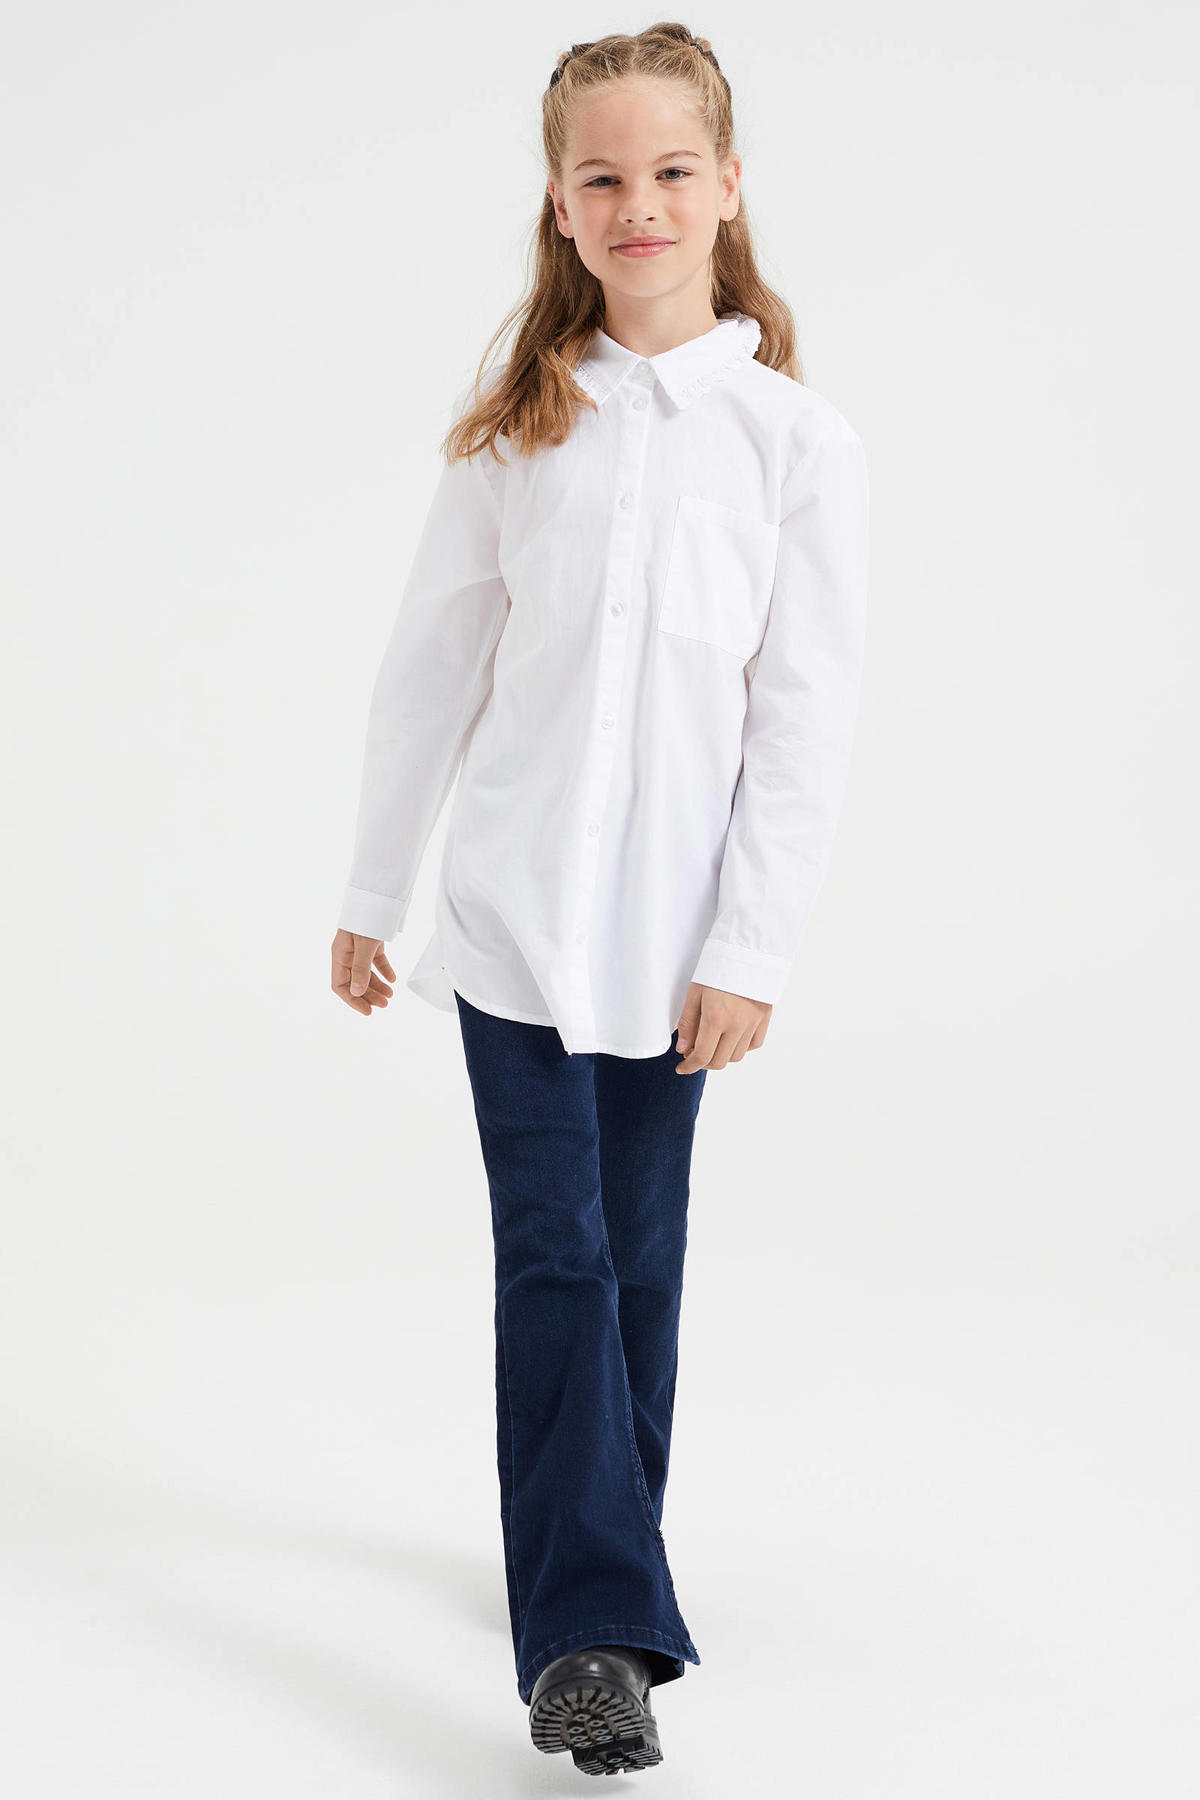 zijde geroosterd brood advocaat WE Fashion blouse wit kopen? | Morgen in huis | kleertjes.com